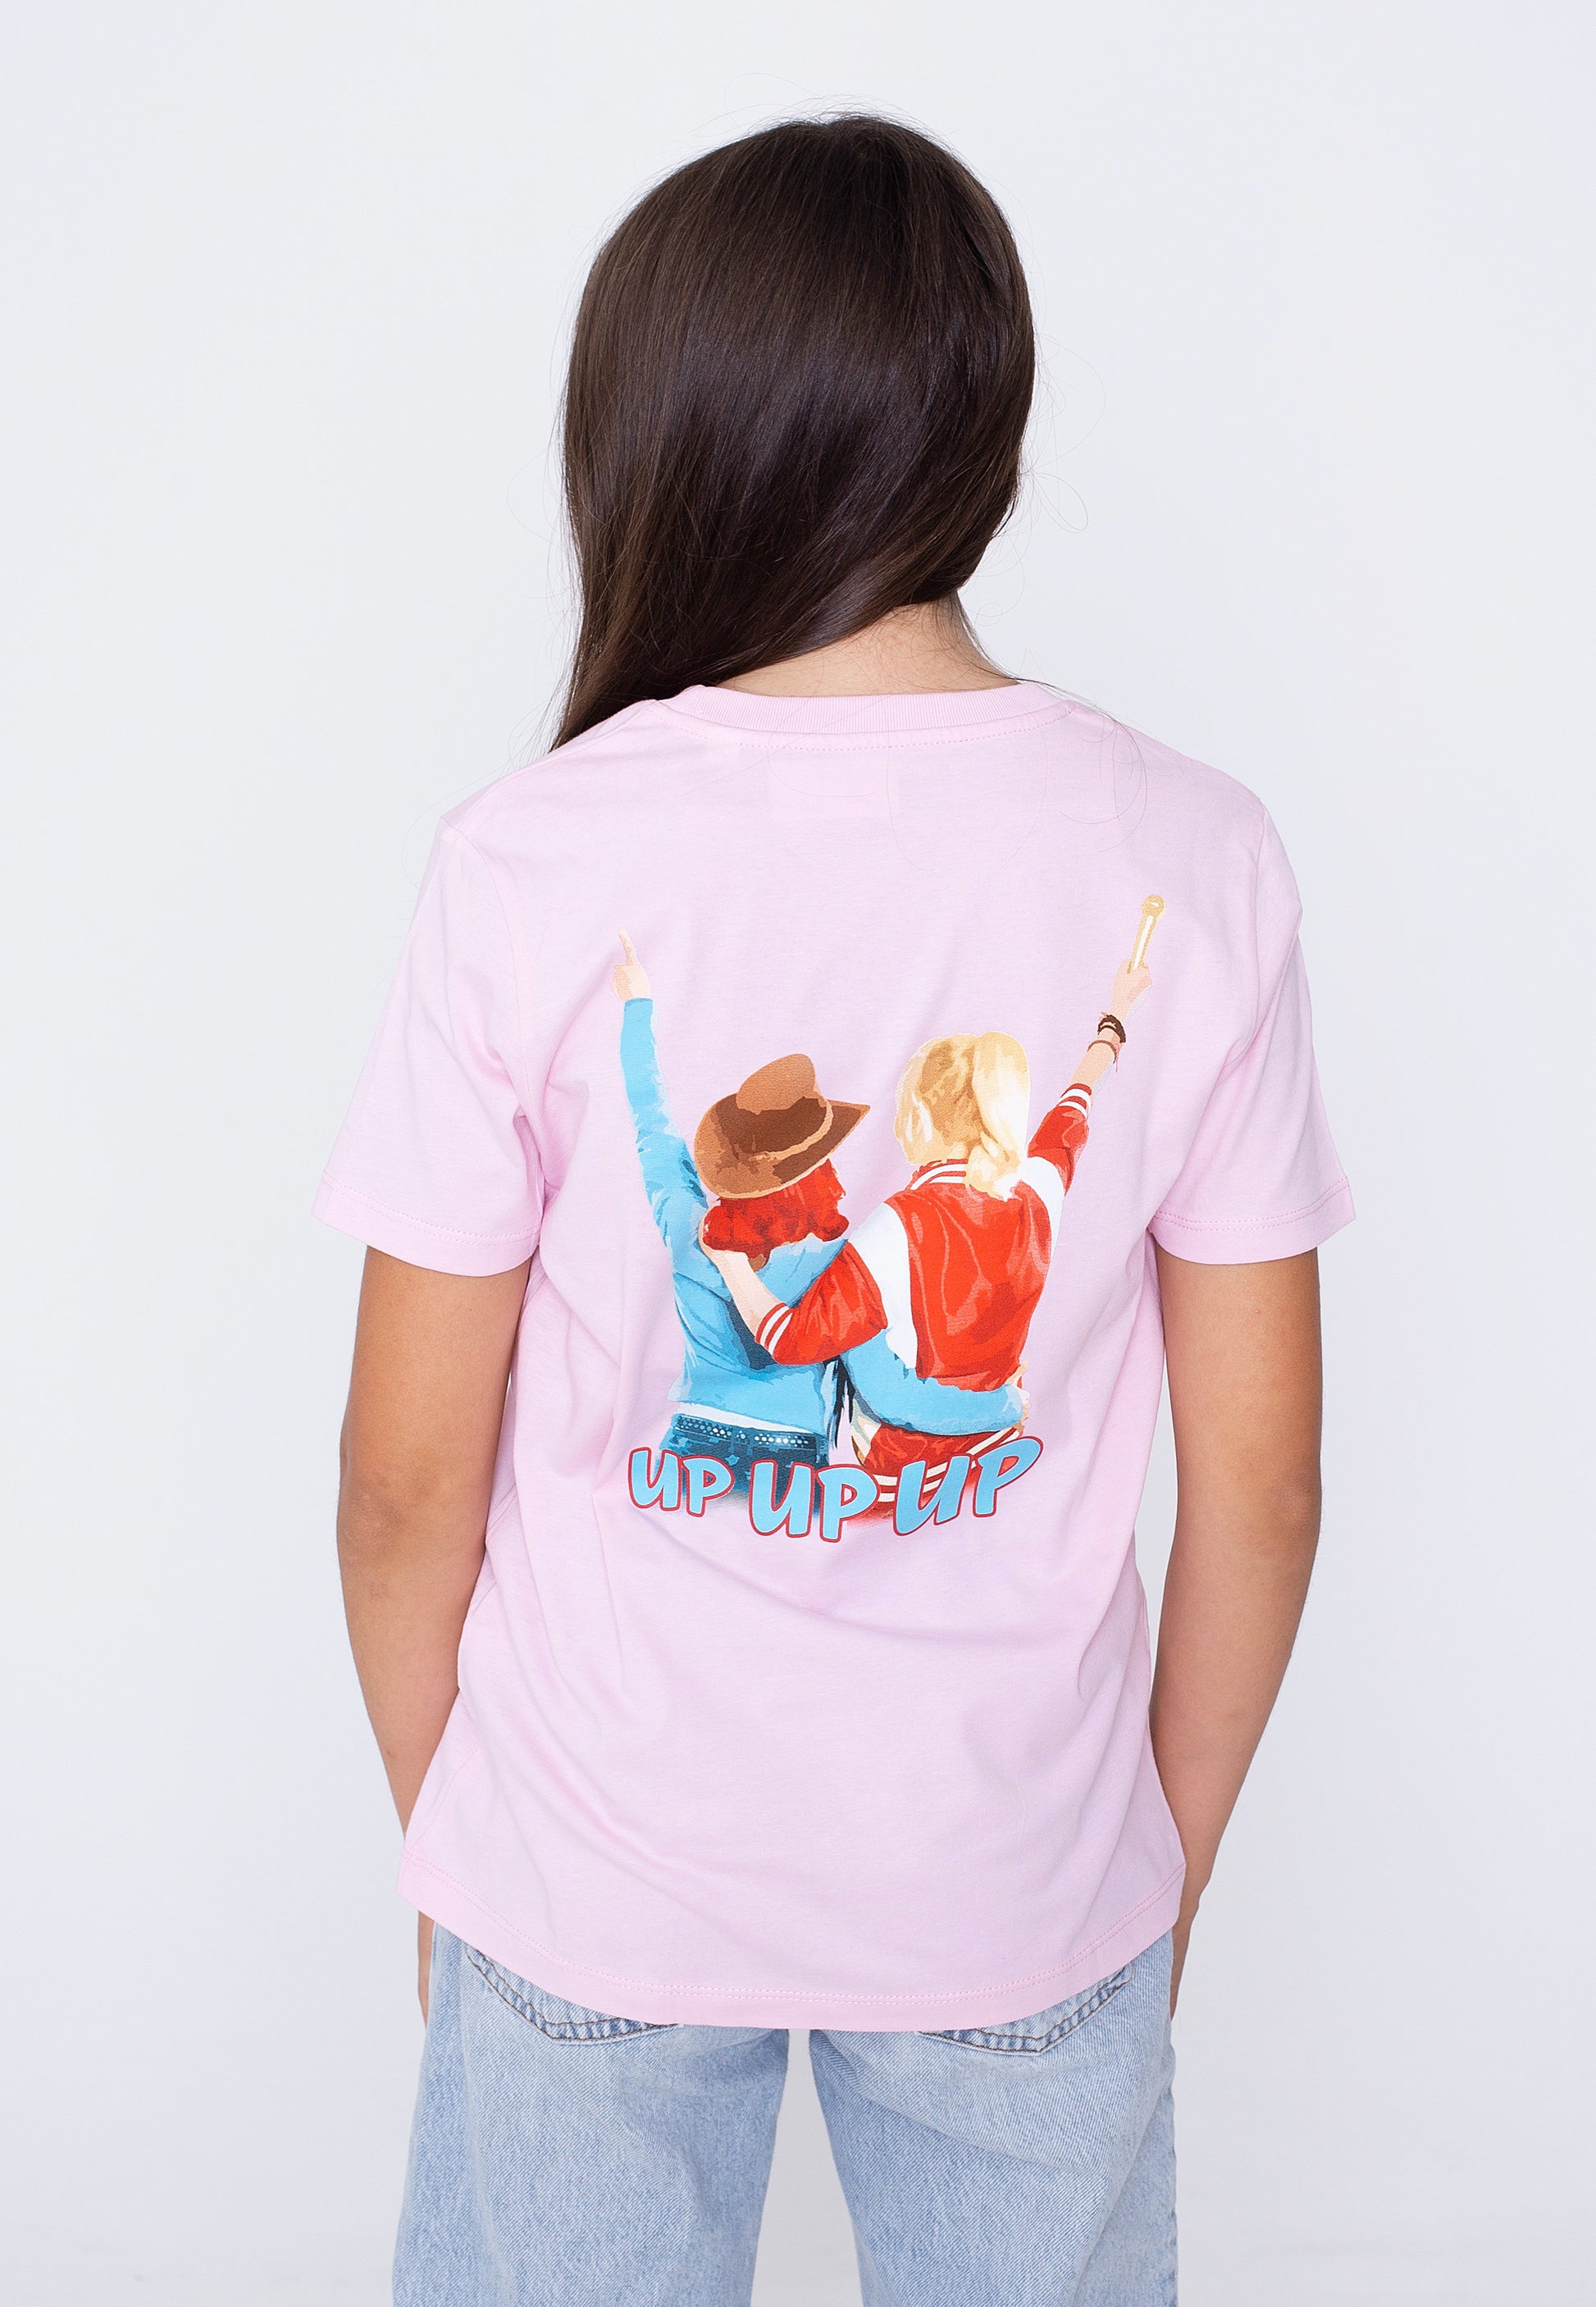 Bibi & Tina - Up! Up! Up! 2020 Cotton Pink Kids - T-Shirt